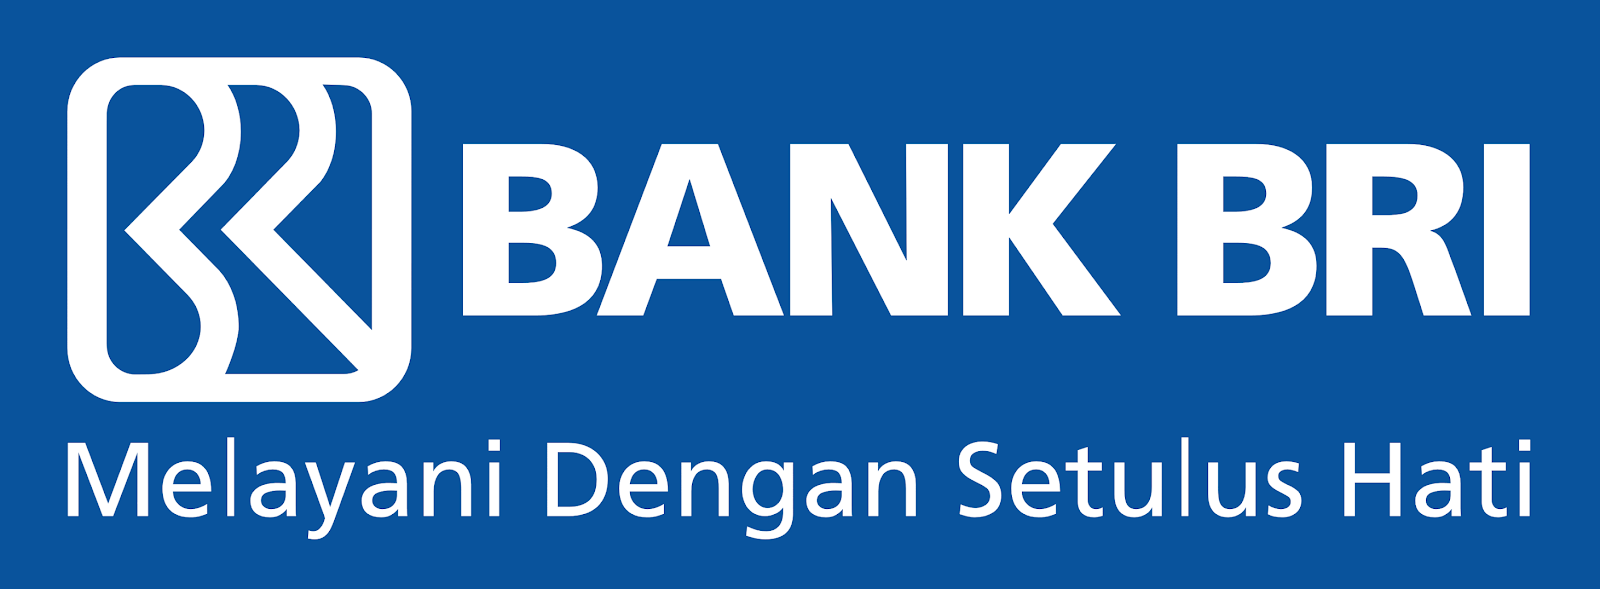 Bank Rakyat Indonesia (BRI) adalah salah satu bank milik pemerintah yang terbesar di Indonesia, didirikan di Purwokerto